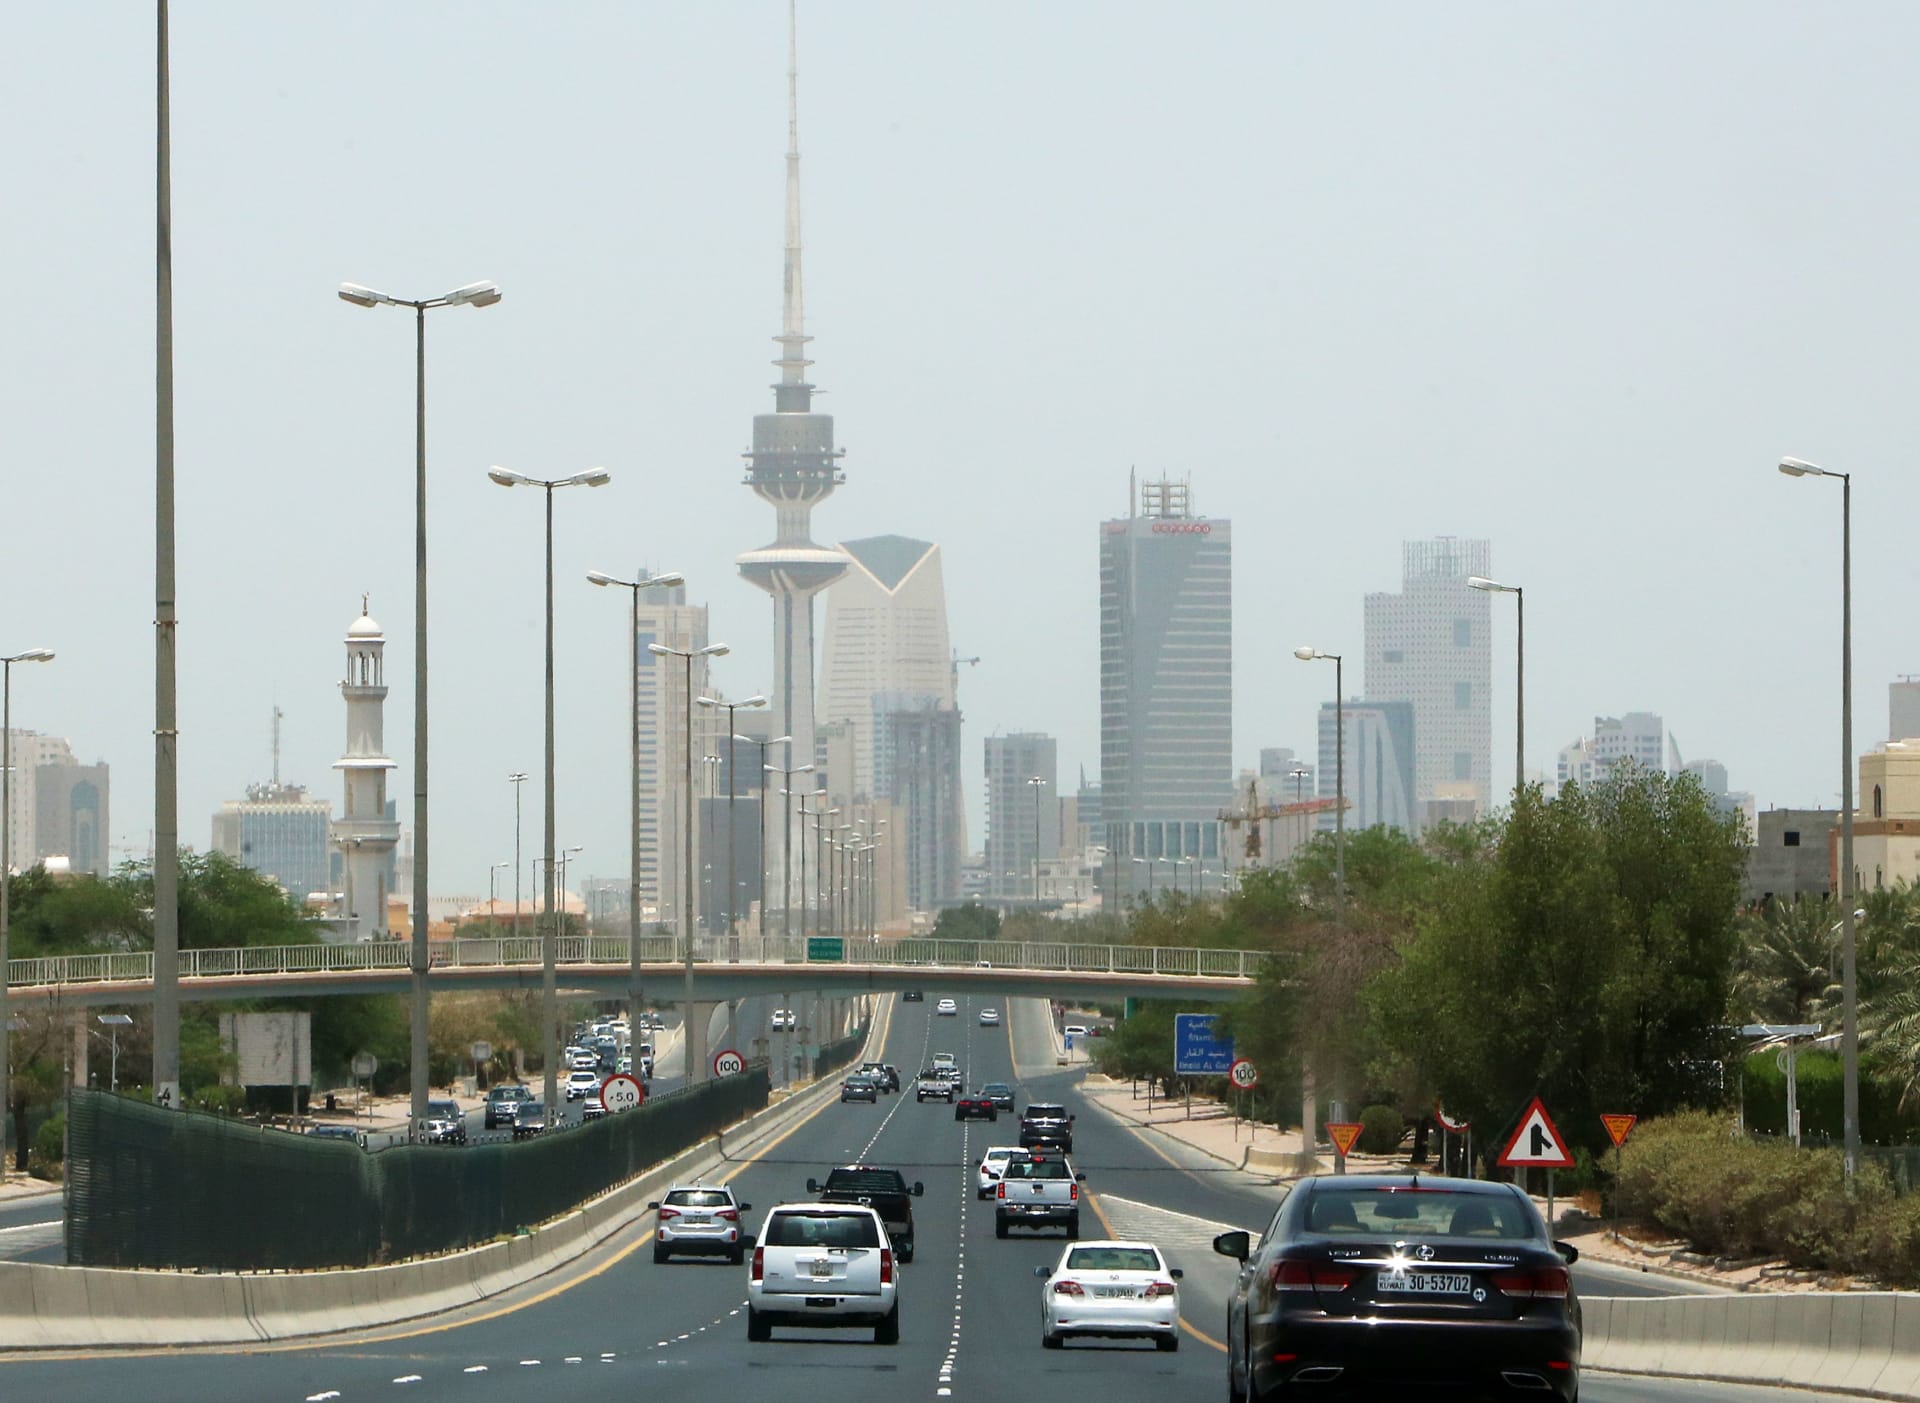 نائب كويتية تطالب بدفع الوافدين رسوم على استخدام الطرق: "في ديارهم يدفعون"